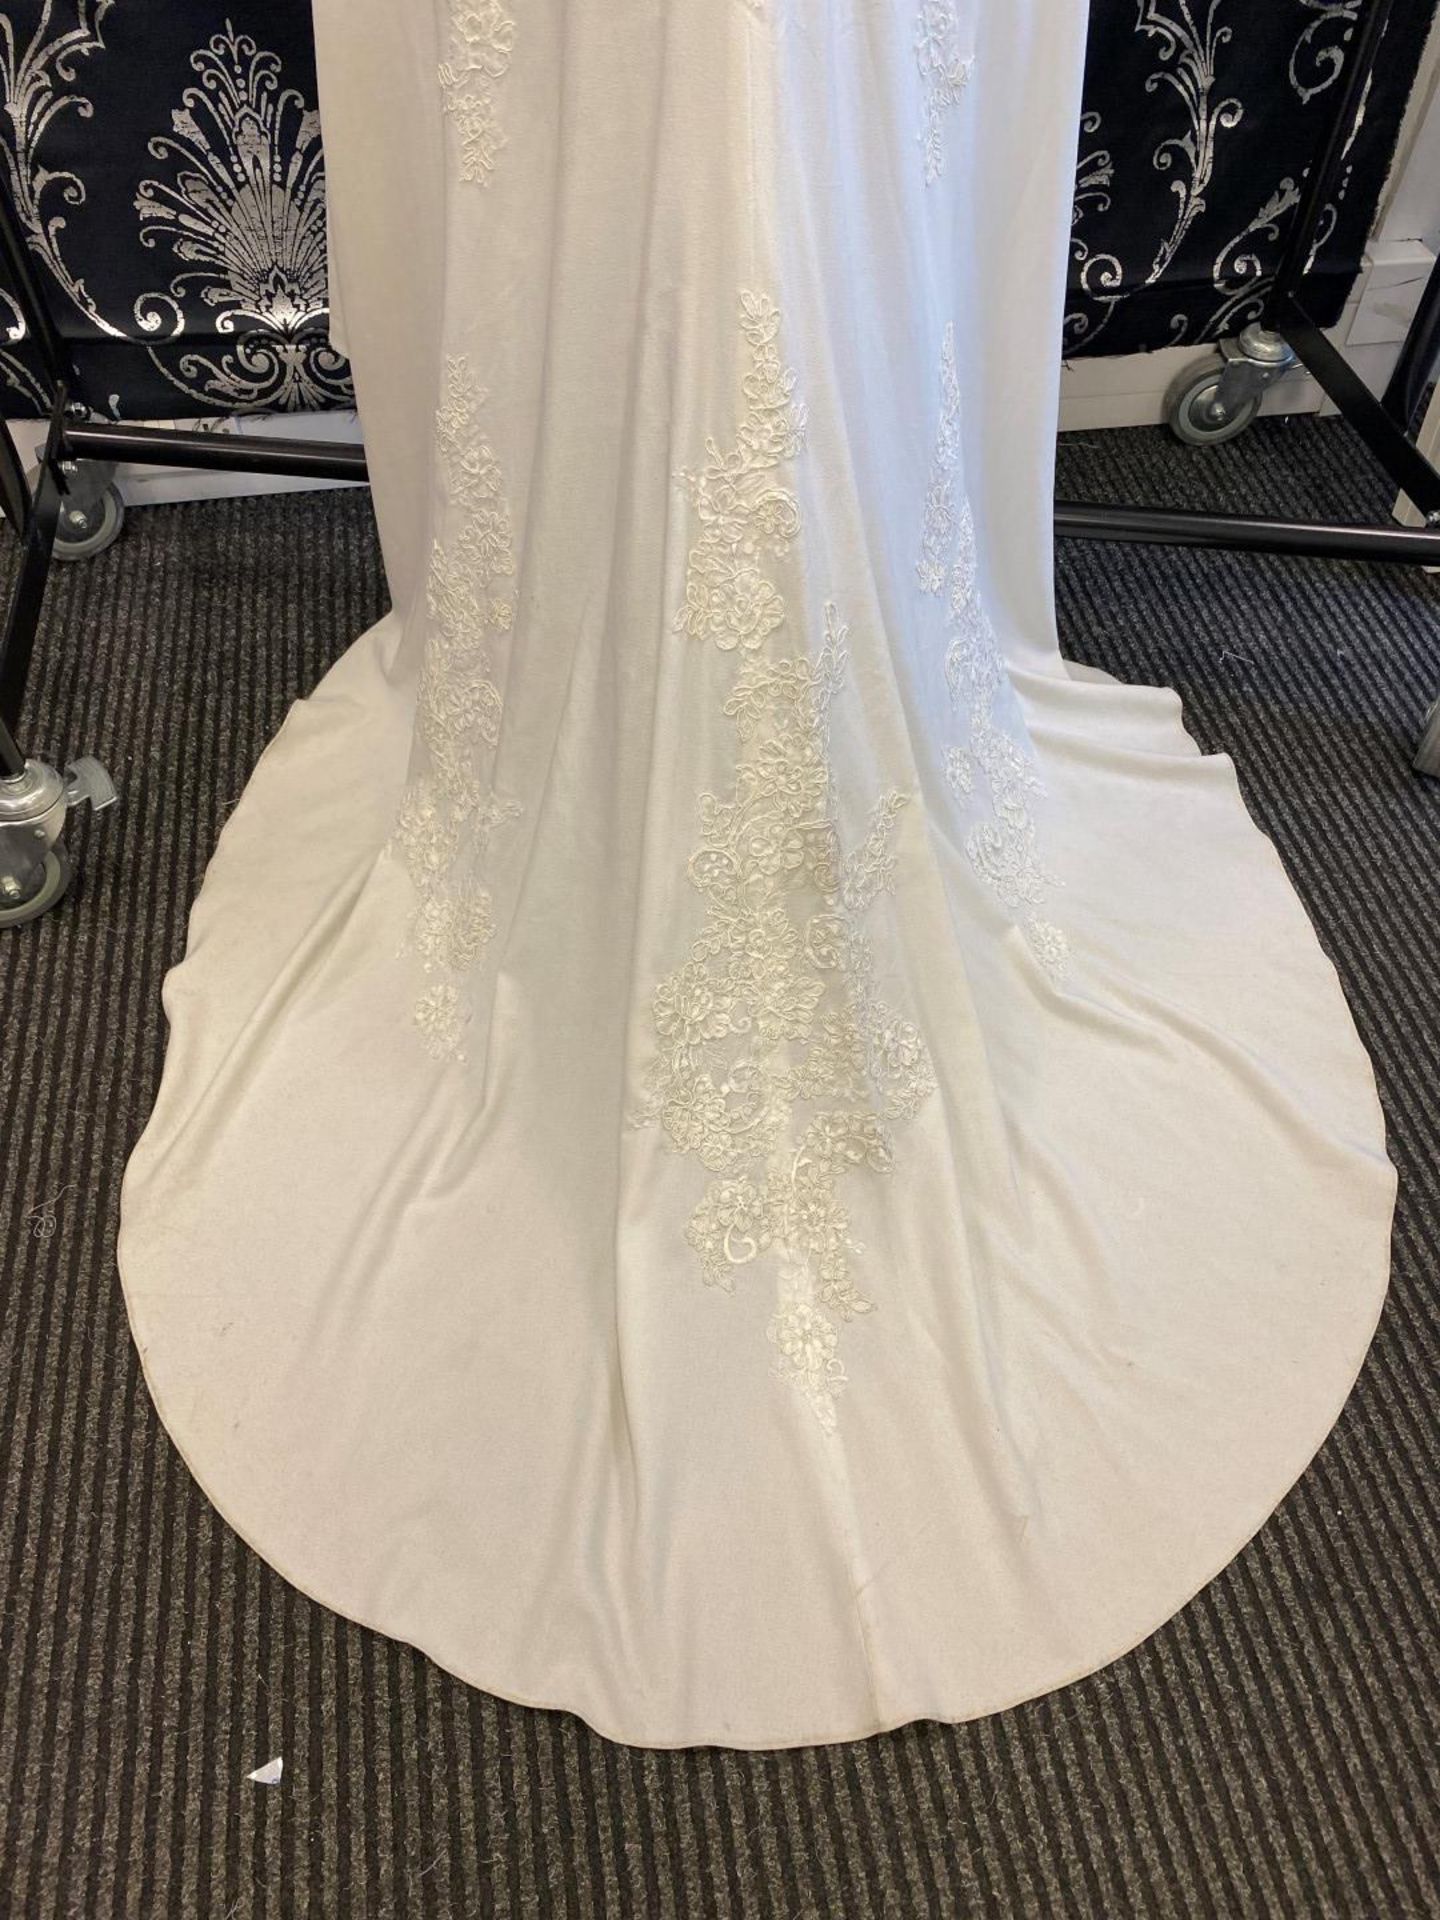 1 x MORI LEE Stunning Chiffon & Lace Biased Cut Designer Wedding Dress Bridal Gown RRP £1,500 UK 12 - Image 8 of 10